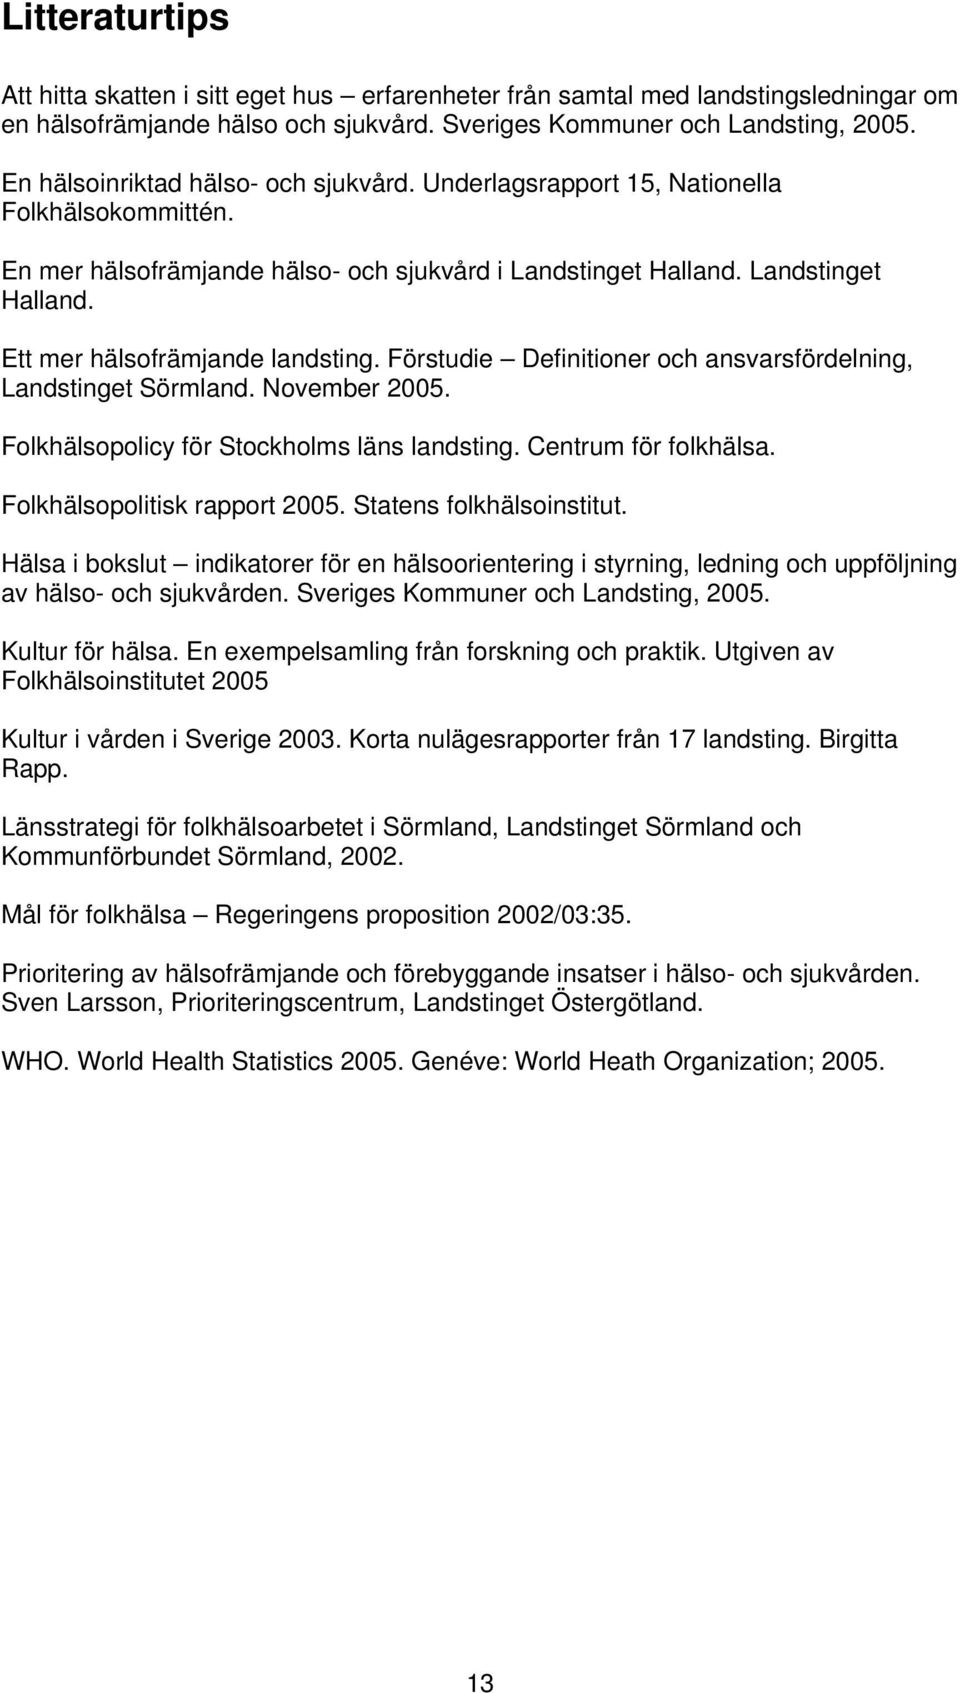 Förstudie Definitioner och ansvarsfördelning, Landstinget Sörmland. November 2005. Folkhälsopolicy för Stockholms läns landsting. Centrum för folkhälsa. Folkhälsopolitisk rapport 2005.